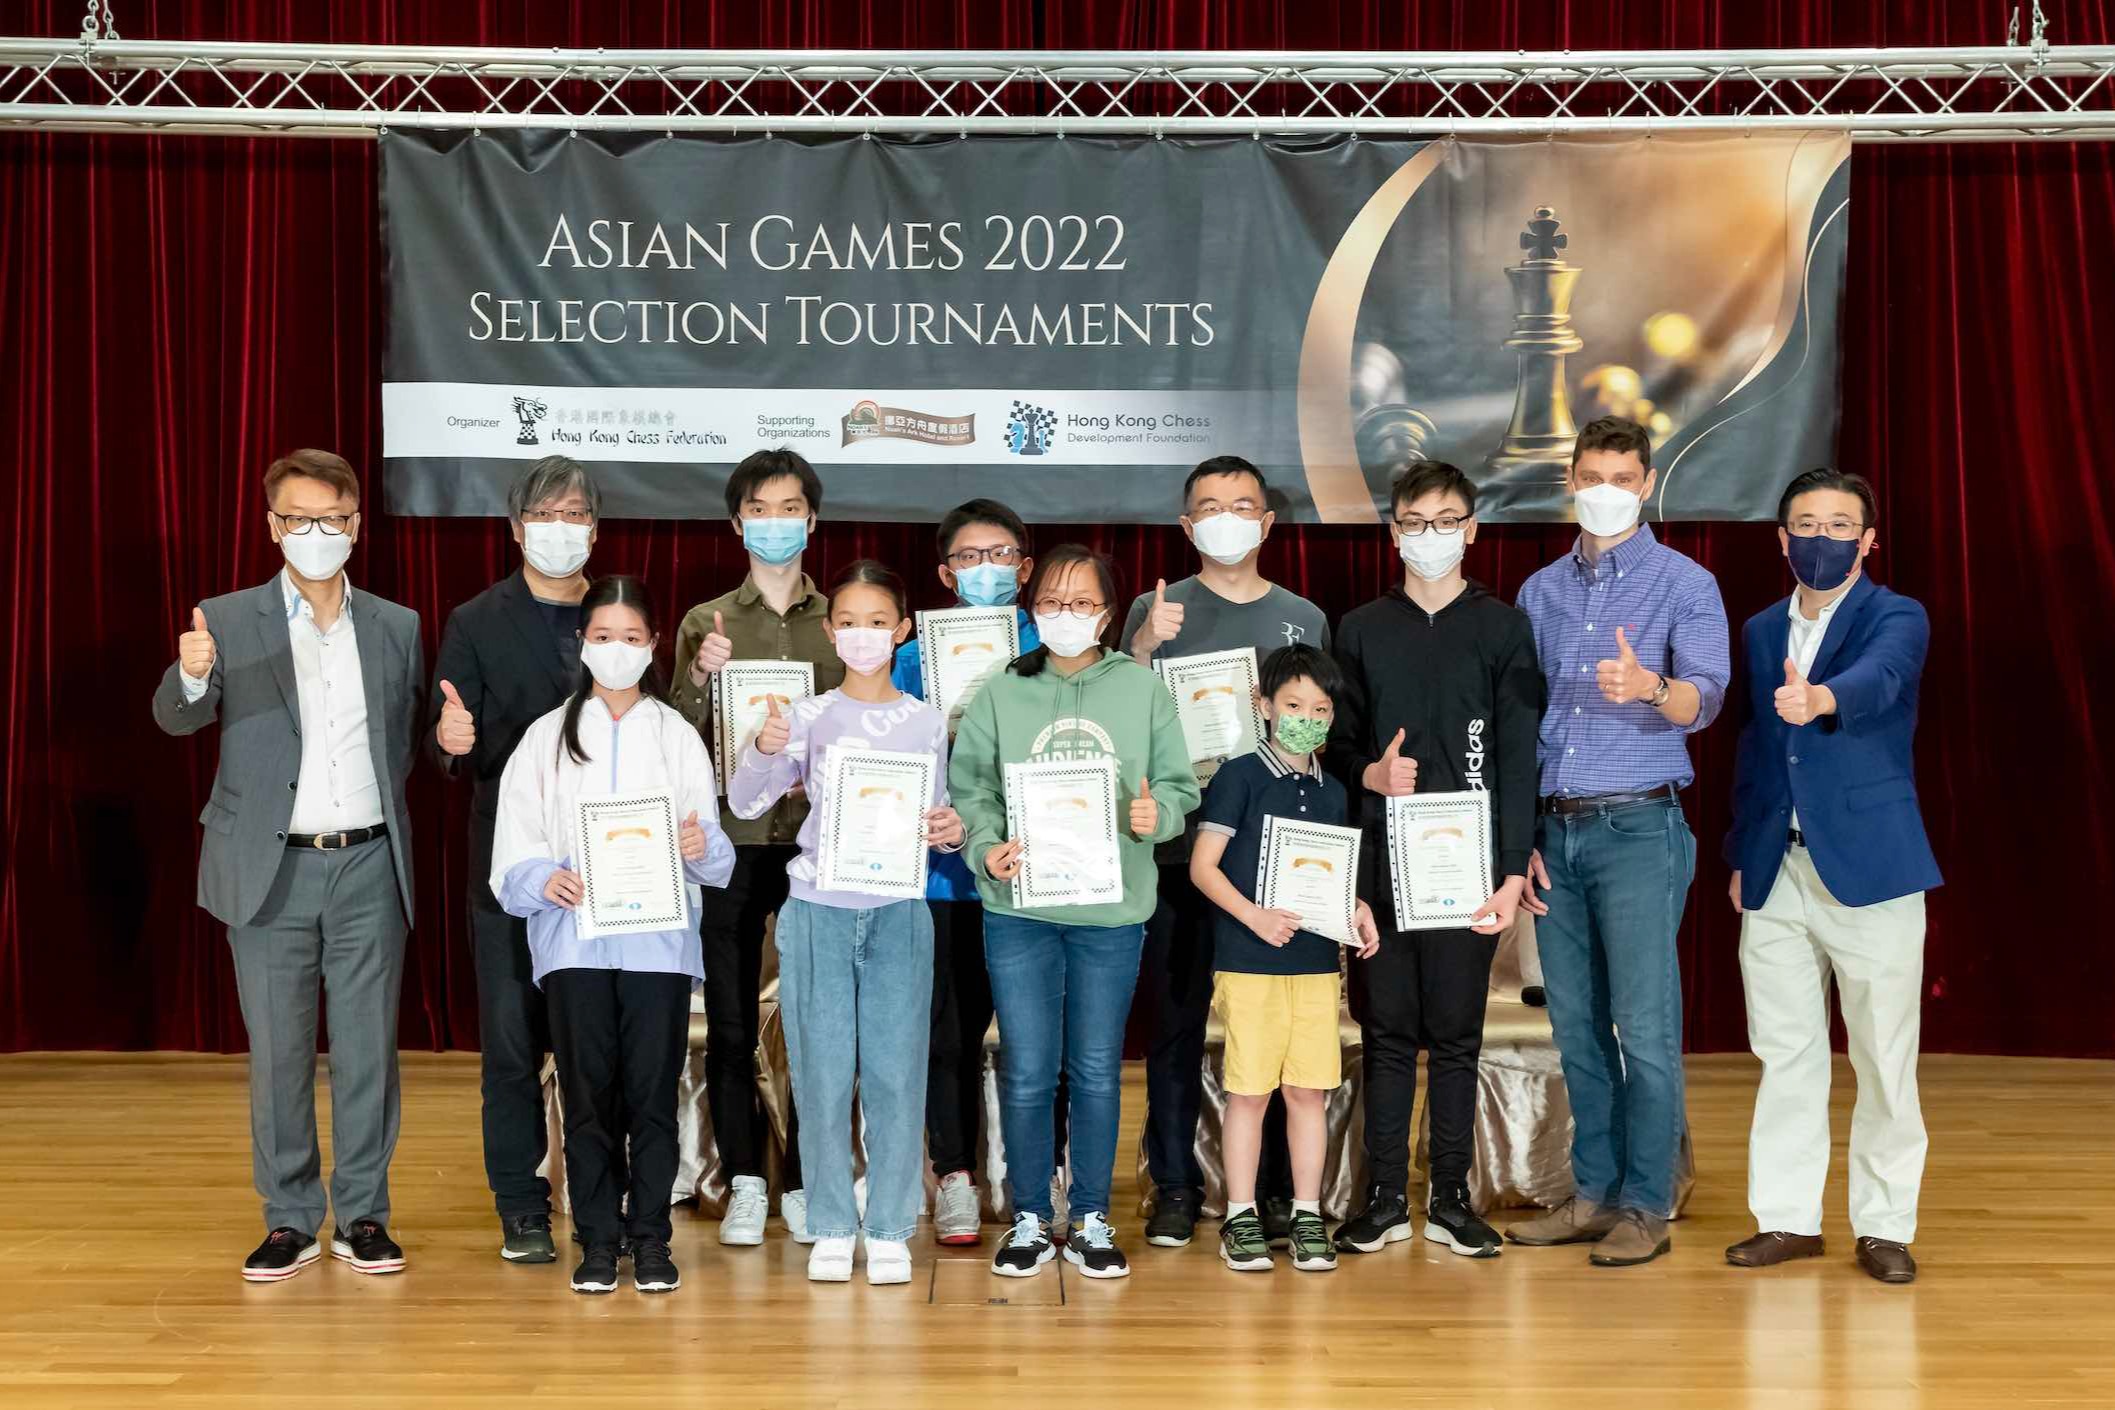 港國際象棋隊首戰杭州亞運 
 舉薦選手最細年僅10歲